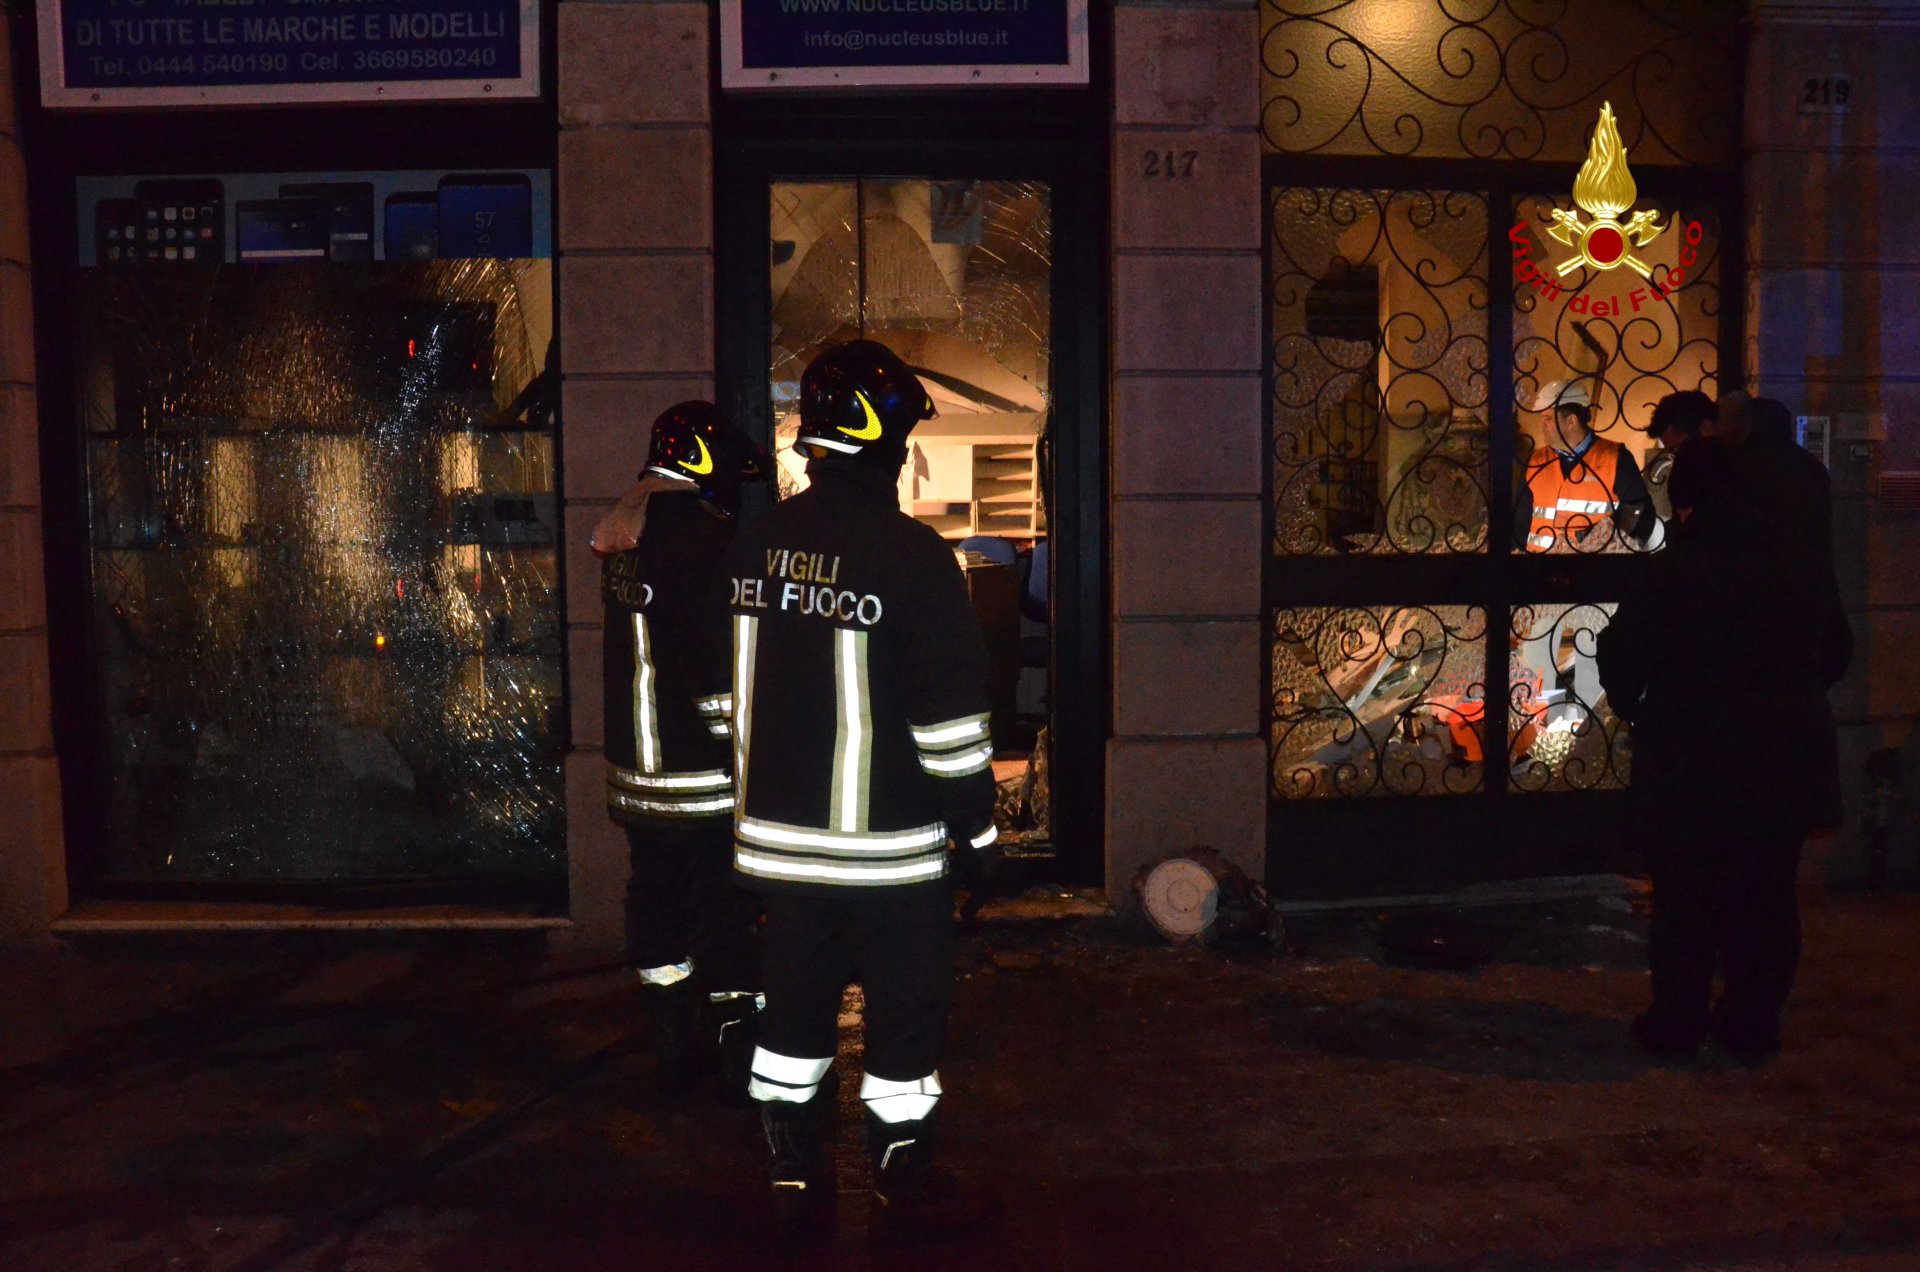 Esplosione e incendio, negozio devastato FOTO